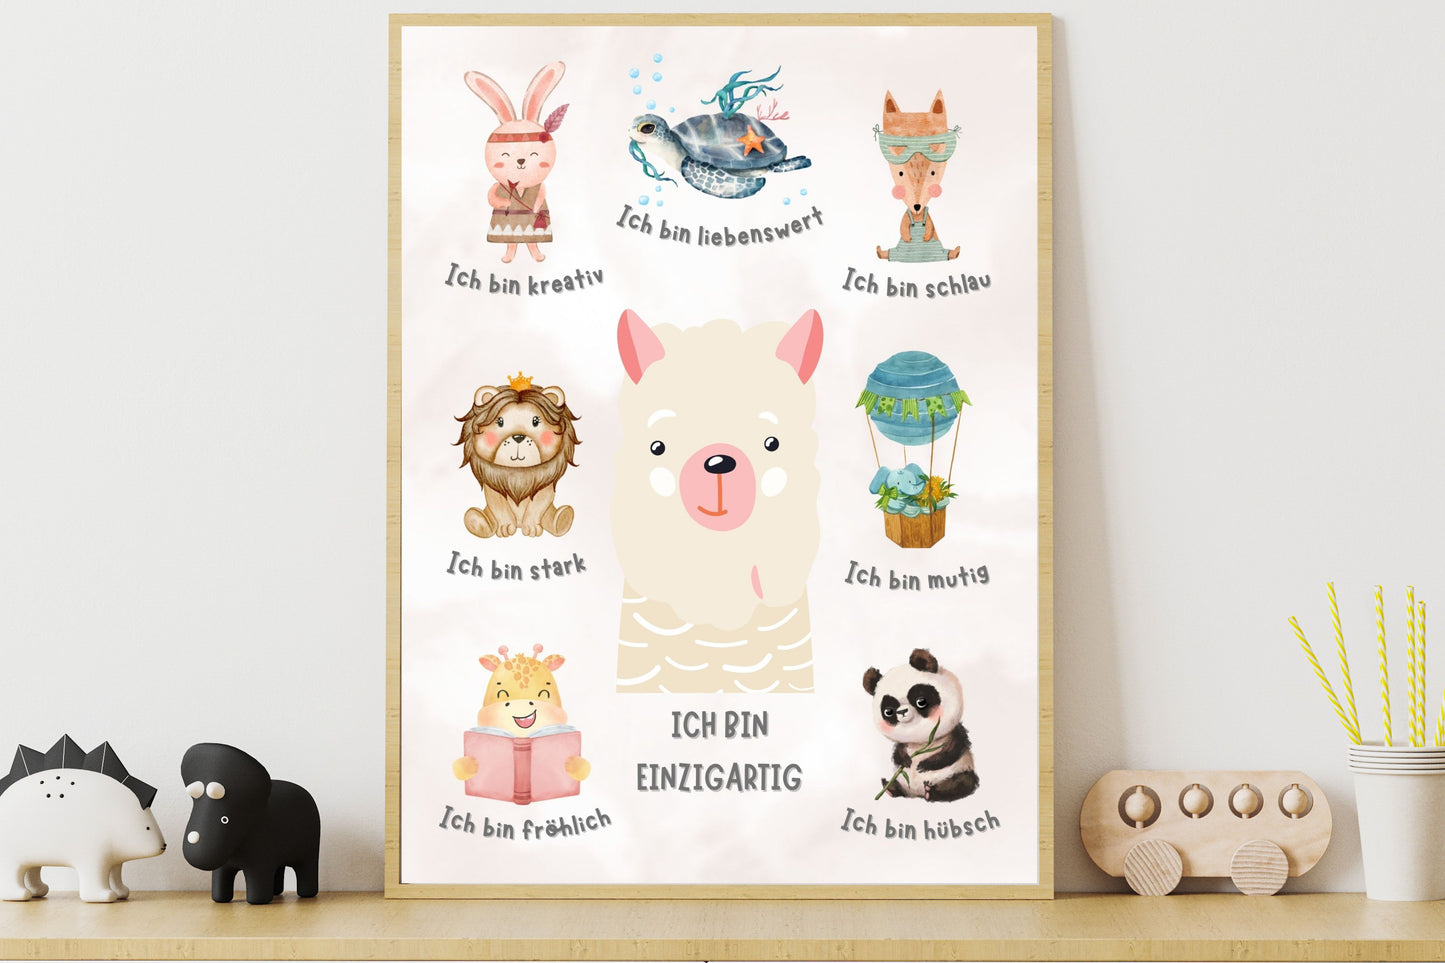 Affirmationsposter A4 - Tier Poster mit Affirmationen für Kinder - Positive Glaubenssätze mit Spaß integrieren